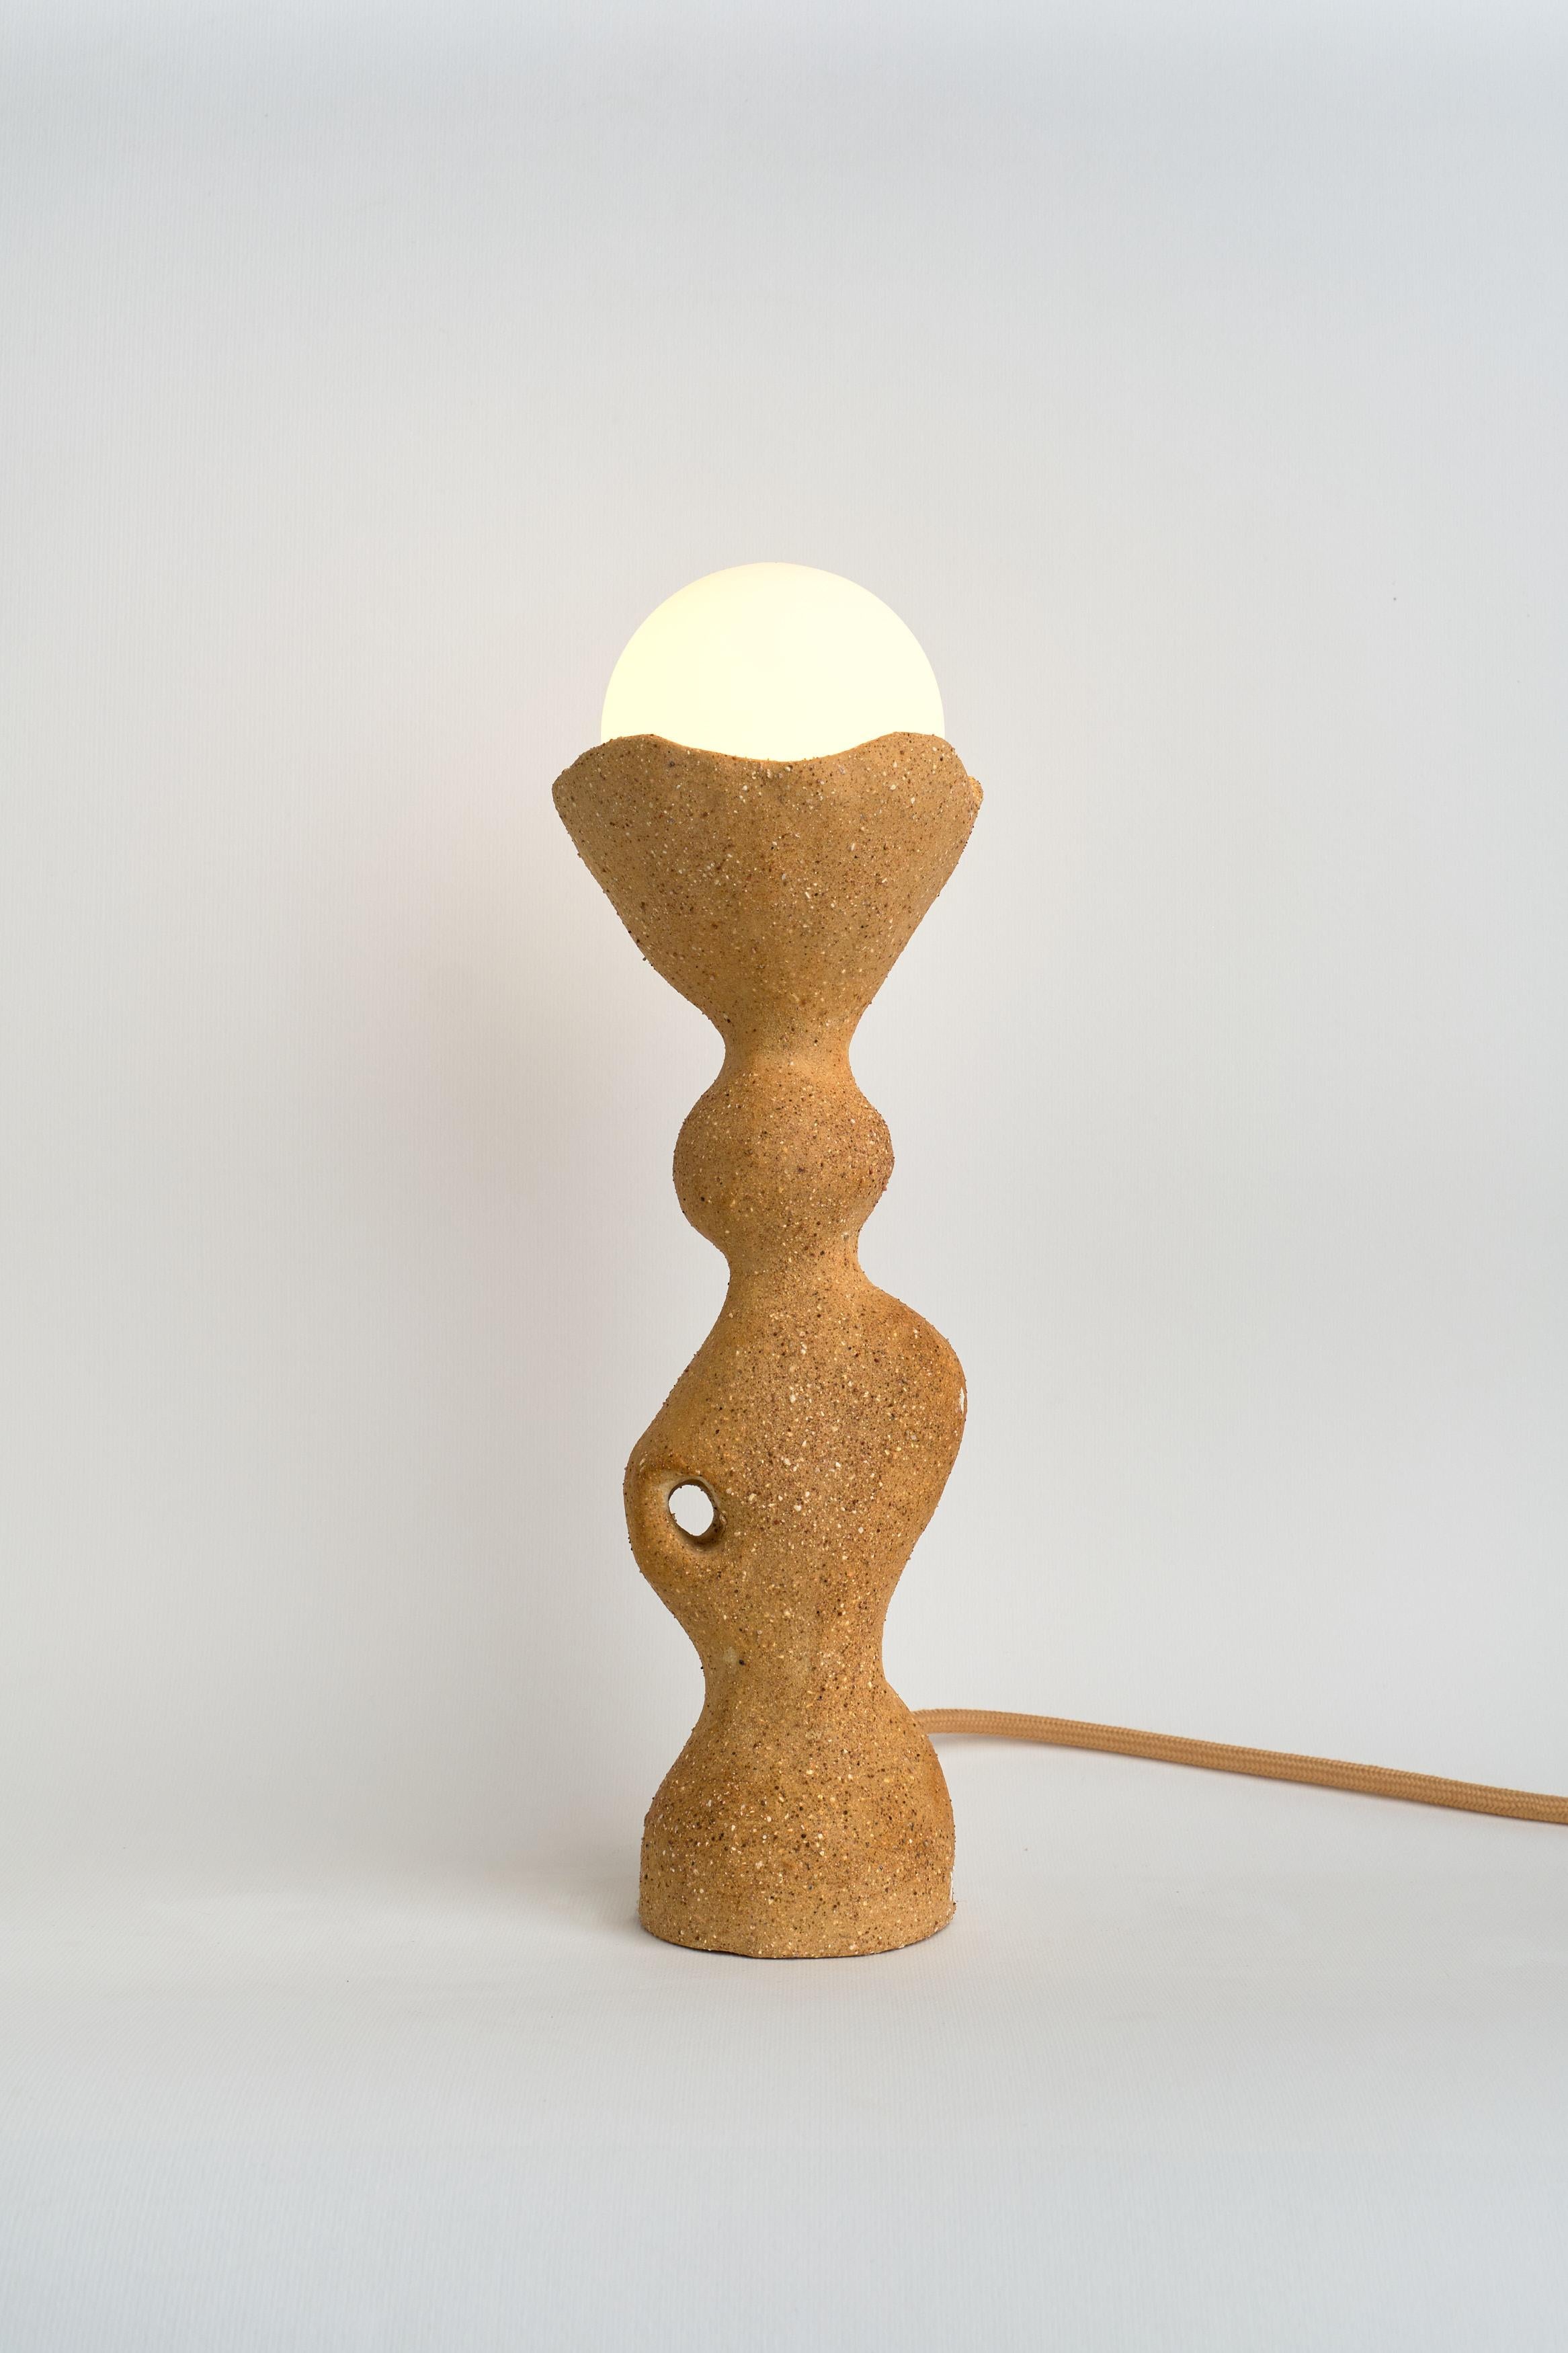 Lampe de table Totem I de Camila Apaez
Unique en son genre
MATERIAL : Grès, argile
Dimensions : 10 x H 31 cm

Ila Ceramica est née d'un processus de recherche intérieure où la céramique est devenue un espace de présence, de silence, de toucher et de